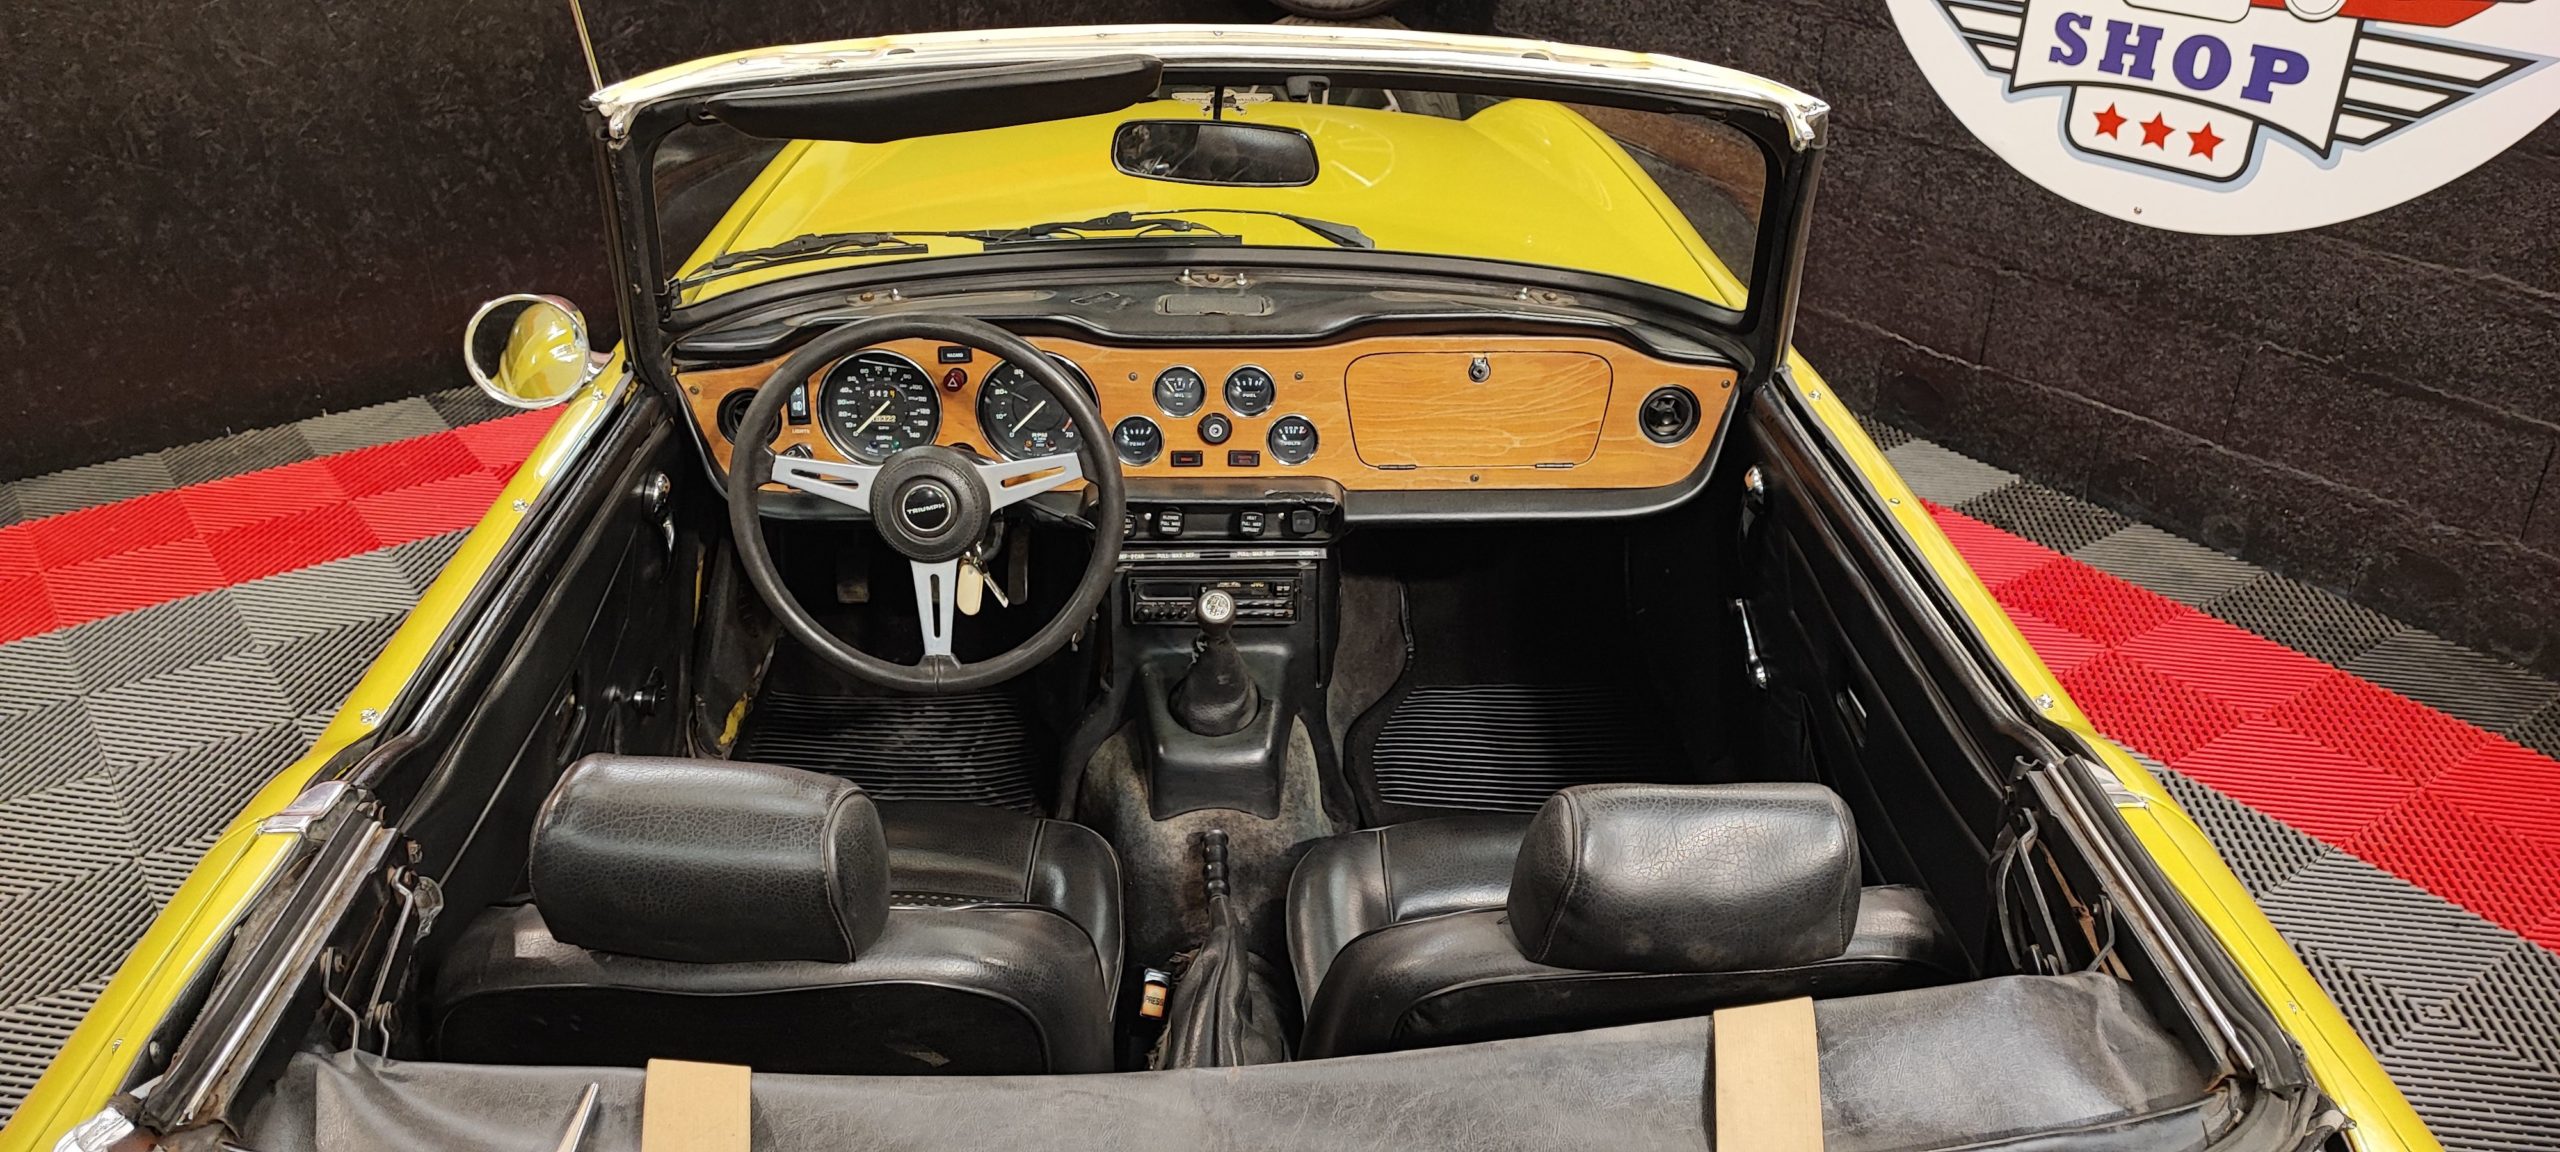 Triumph TR6 – 1974